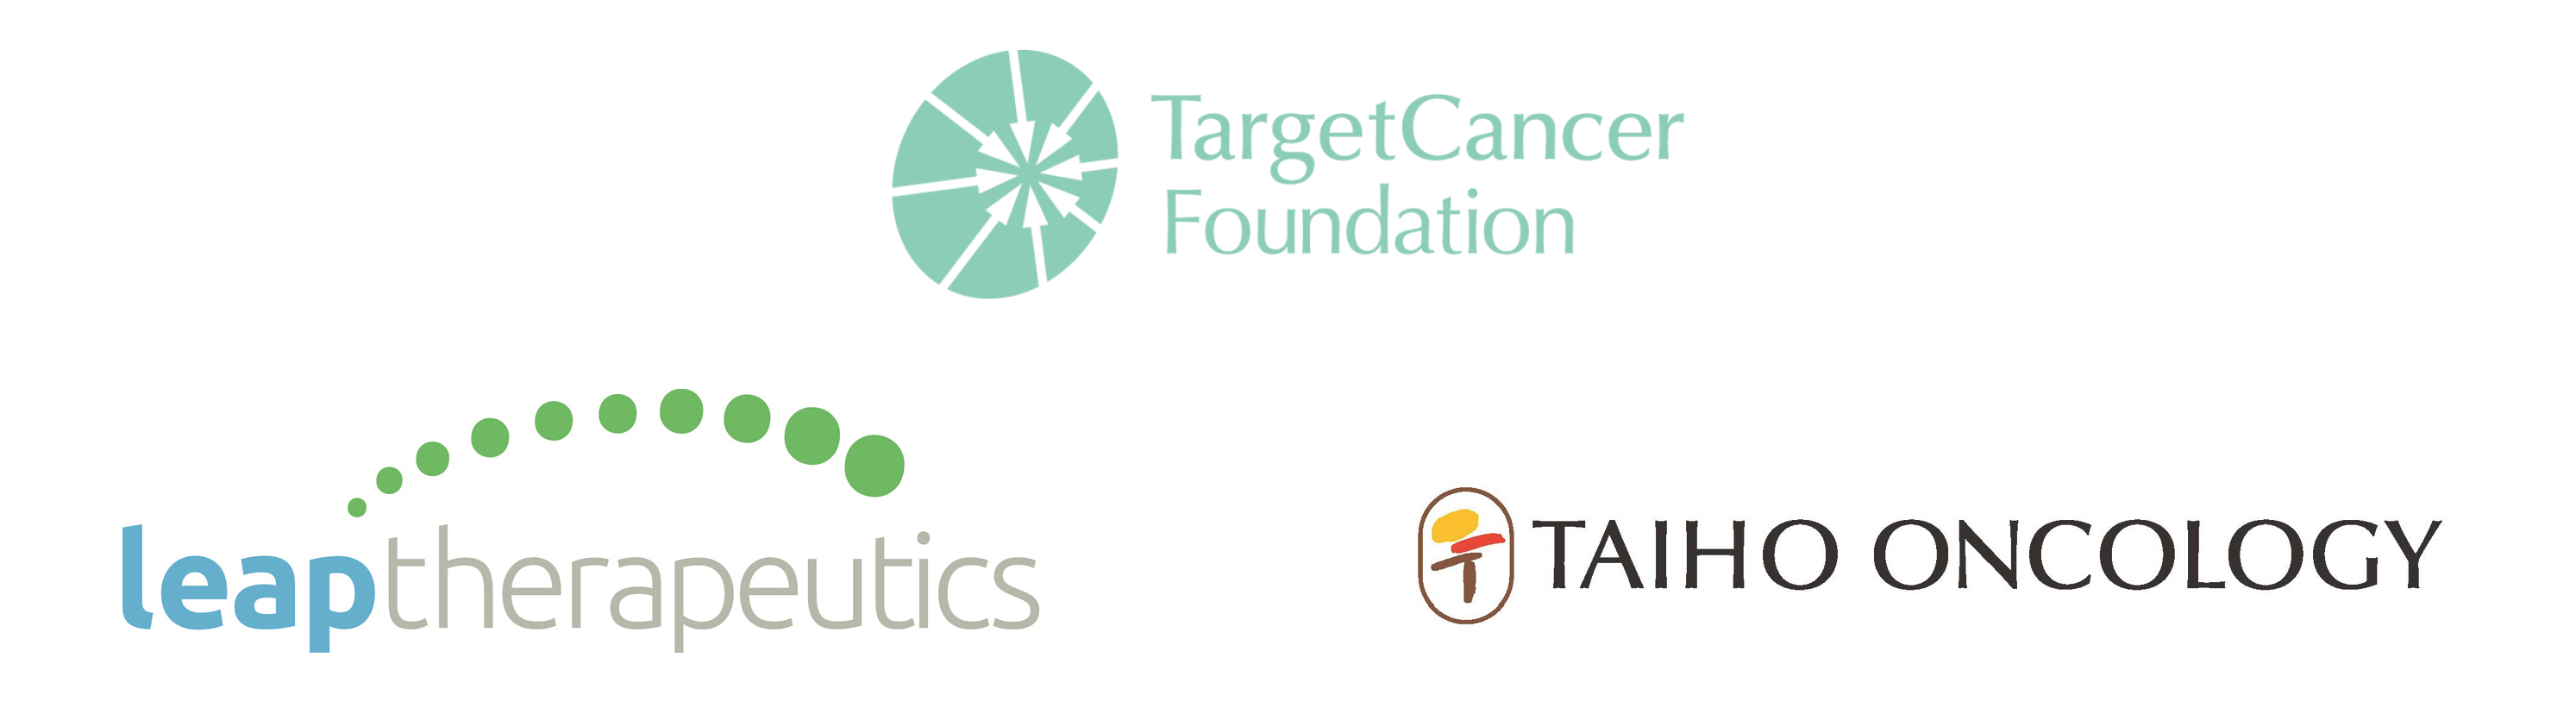 TCF GECTT19 Sponsor logos Oct 24 2019